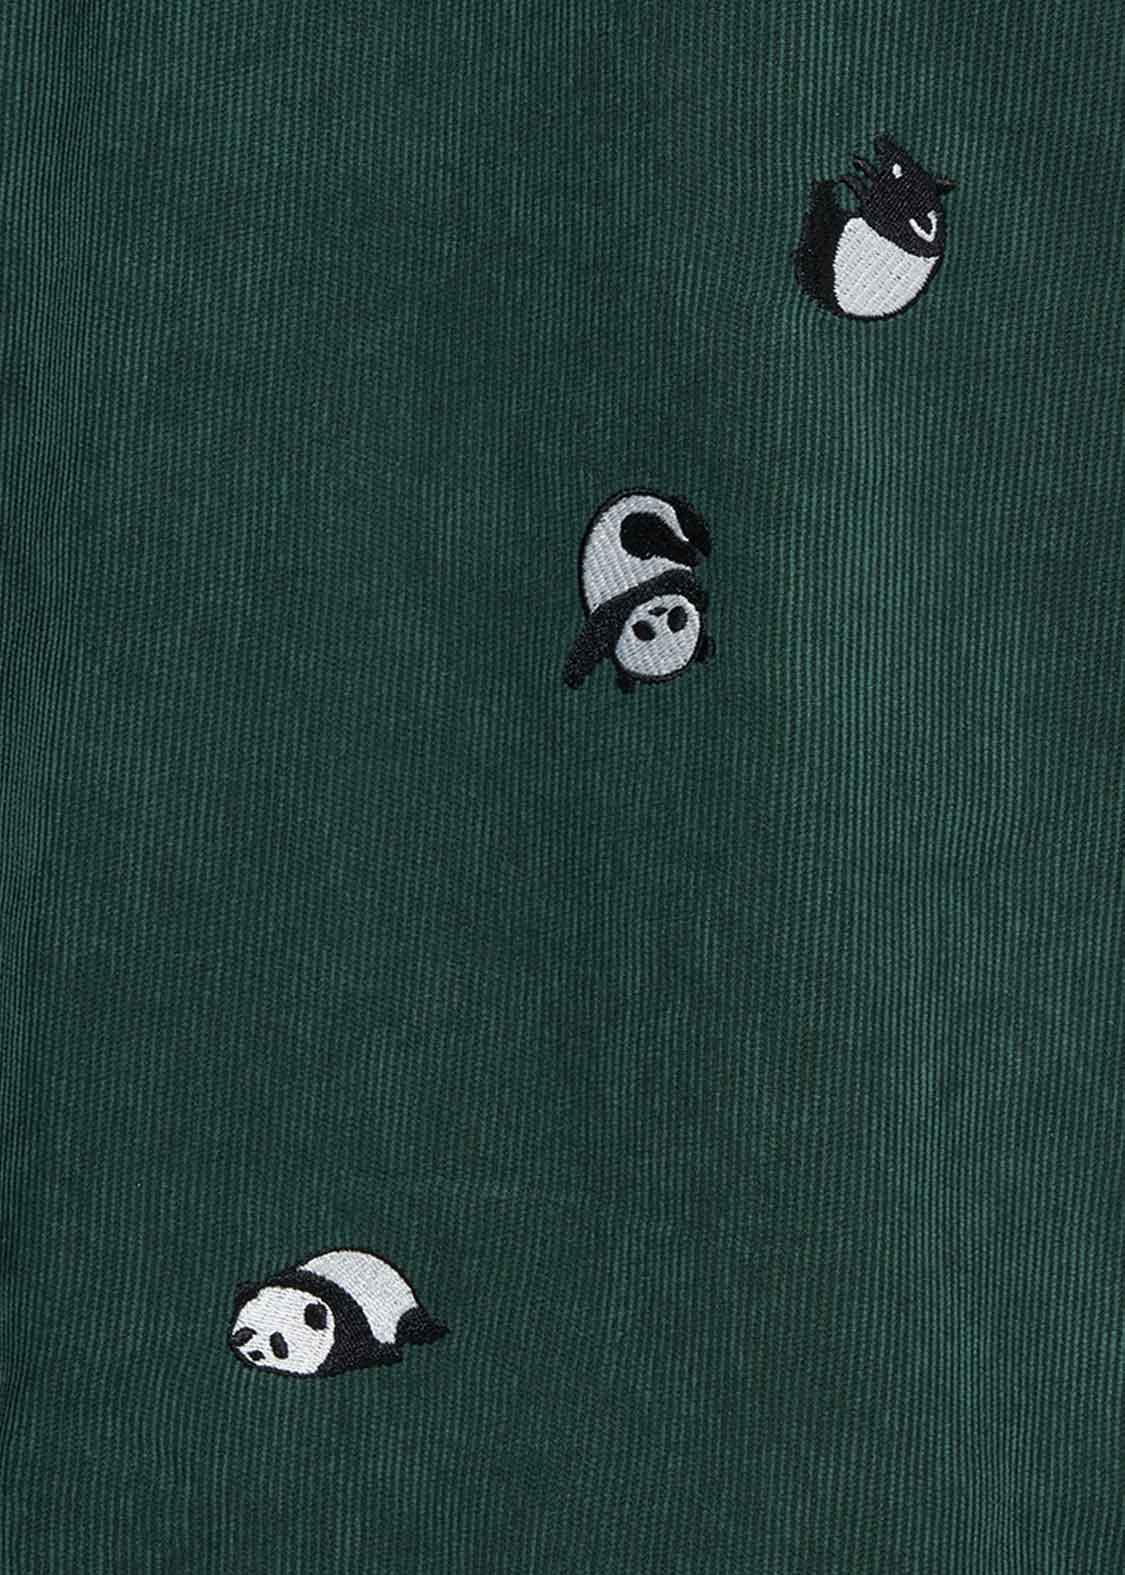 Corduroy Long Sleeve Shirt One-Piece (Rolling Pandas)